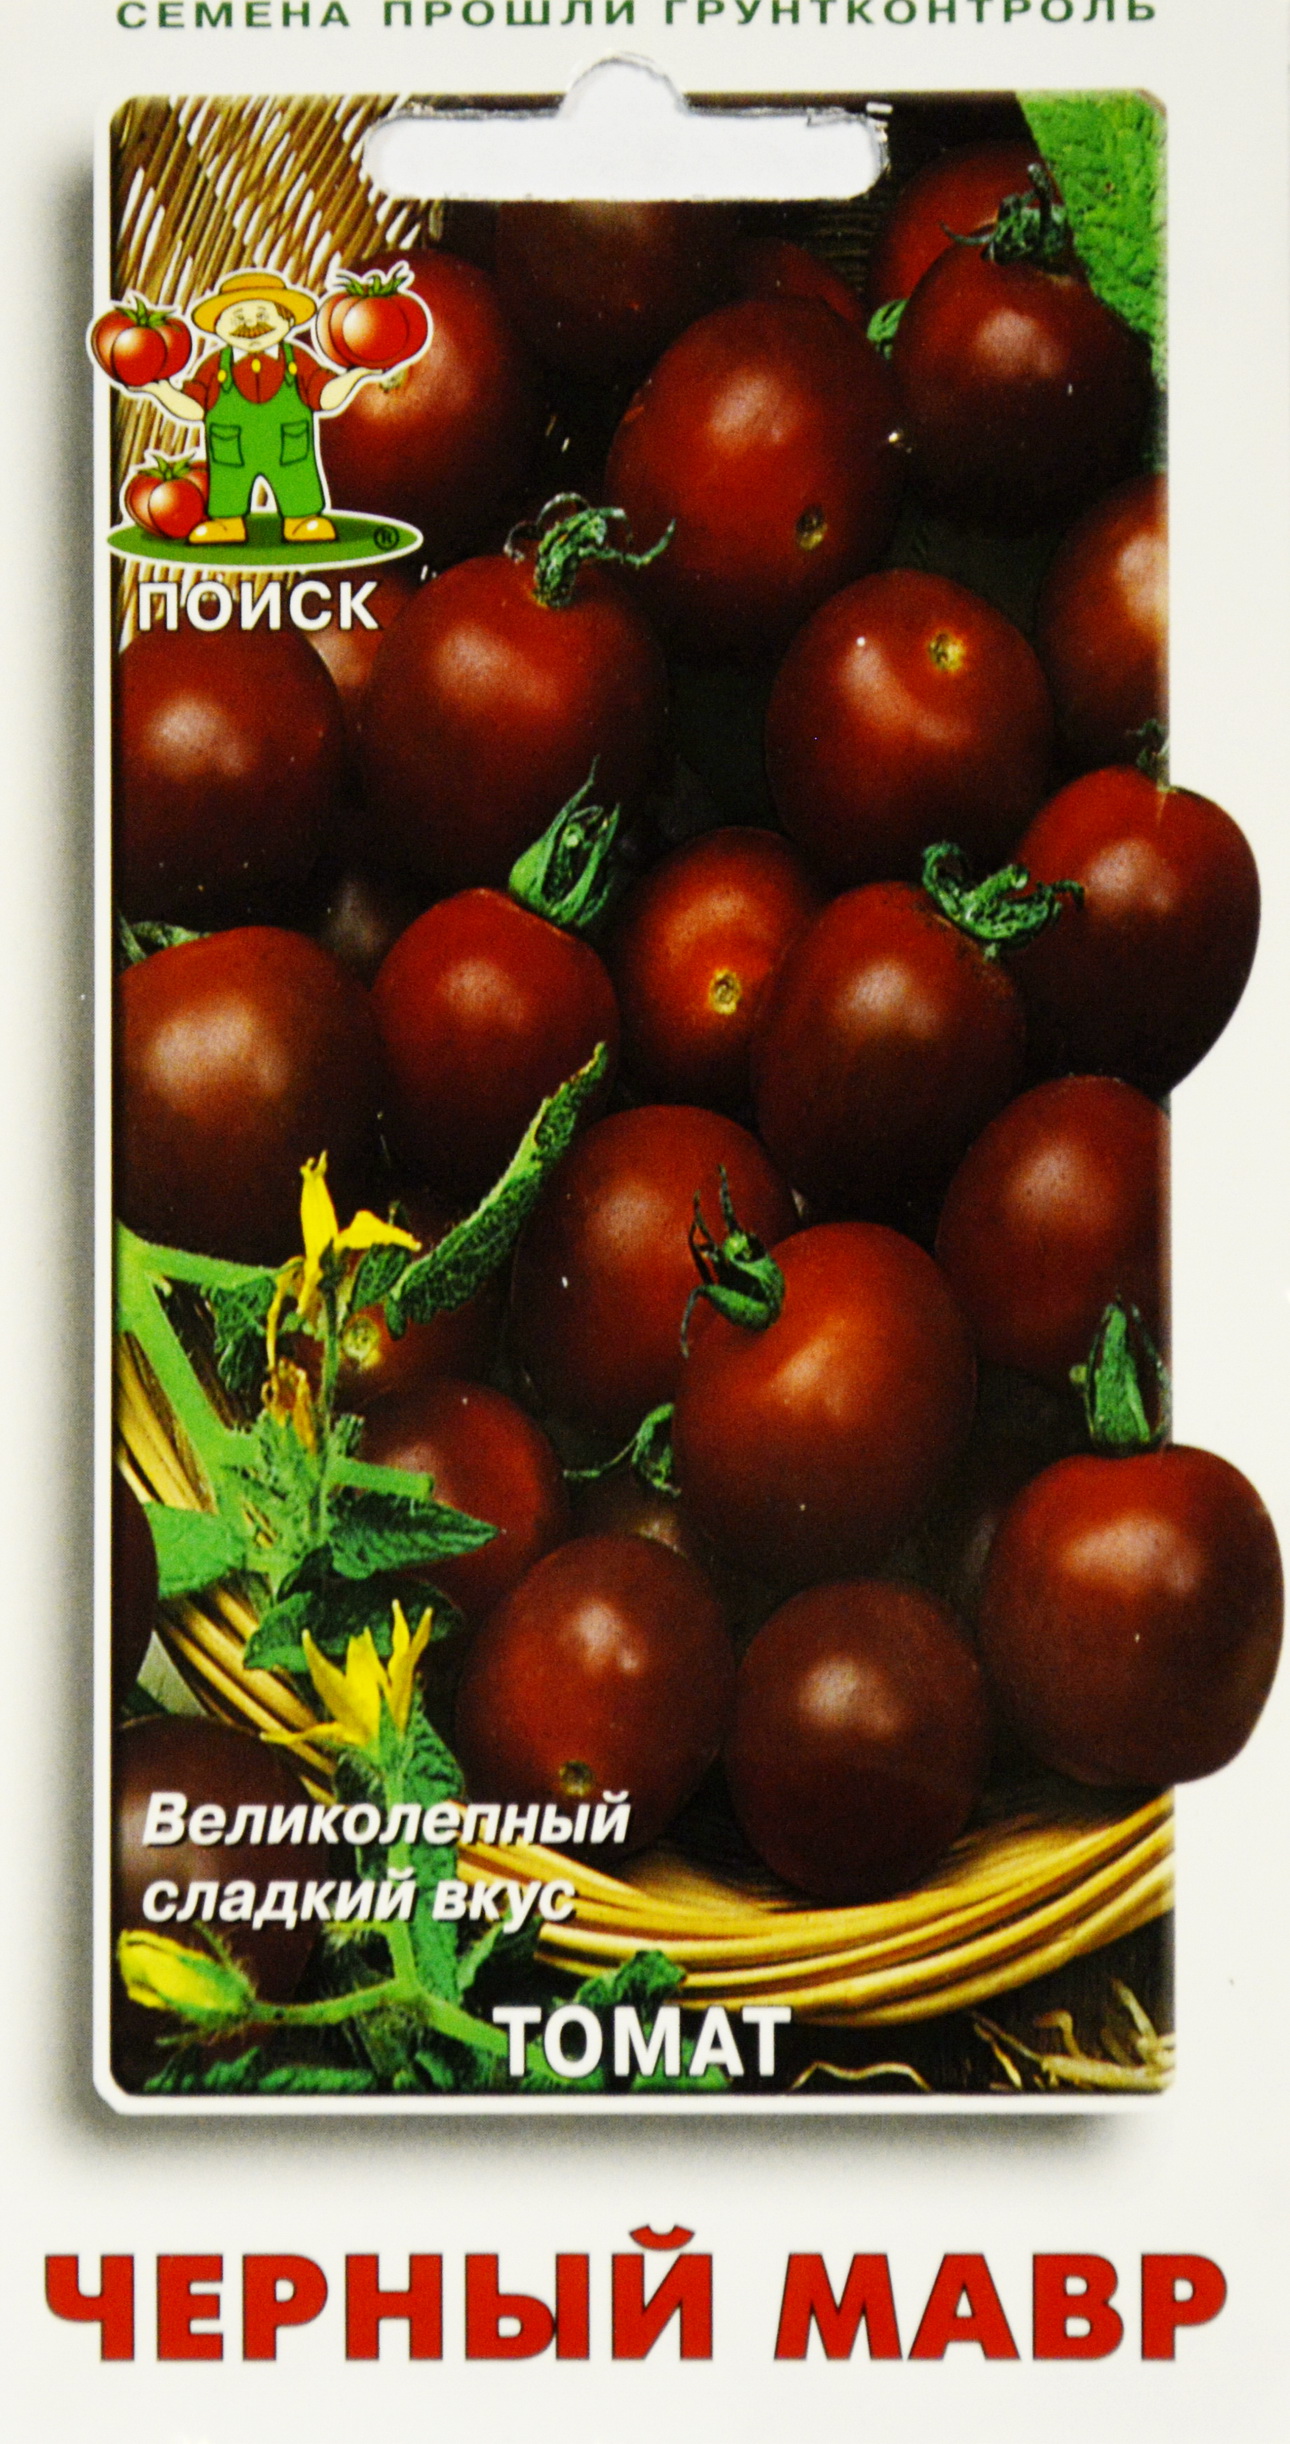 Сорта черных томатов с описанием и фото для открытого грунта и теплицы